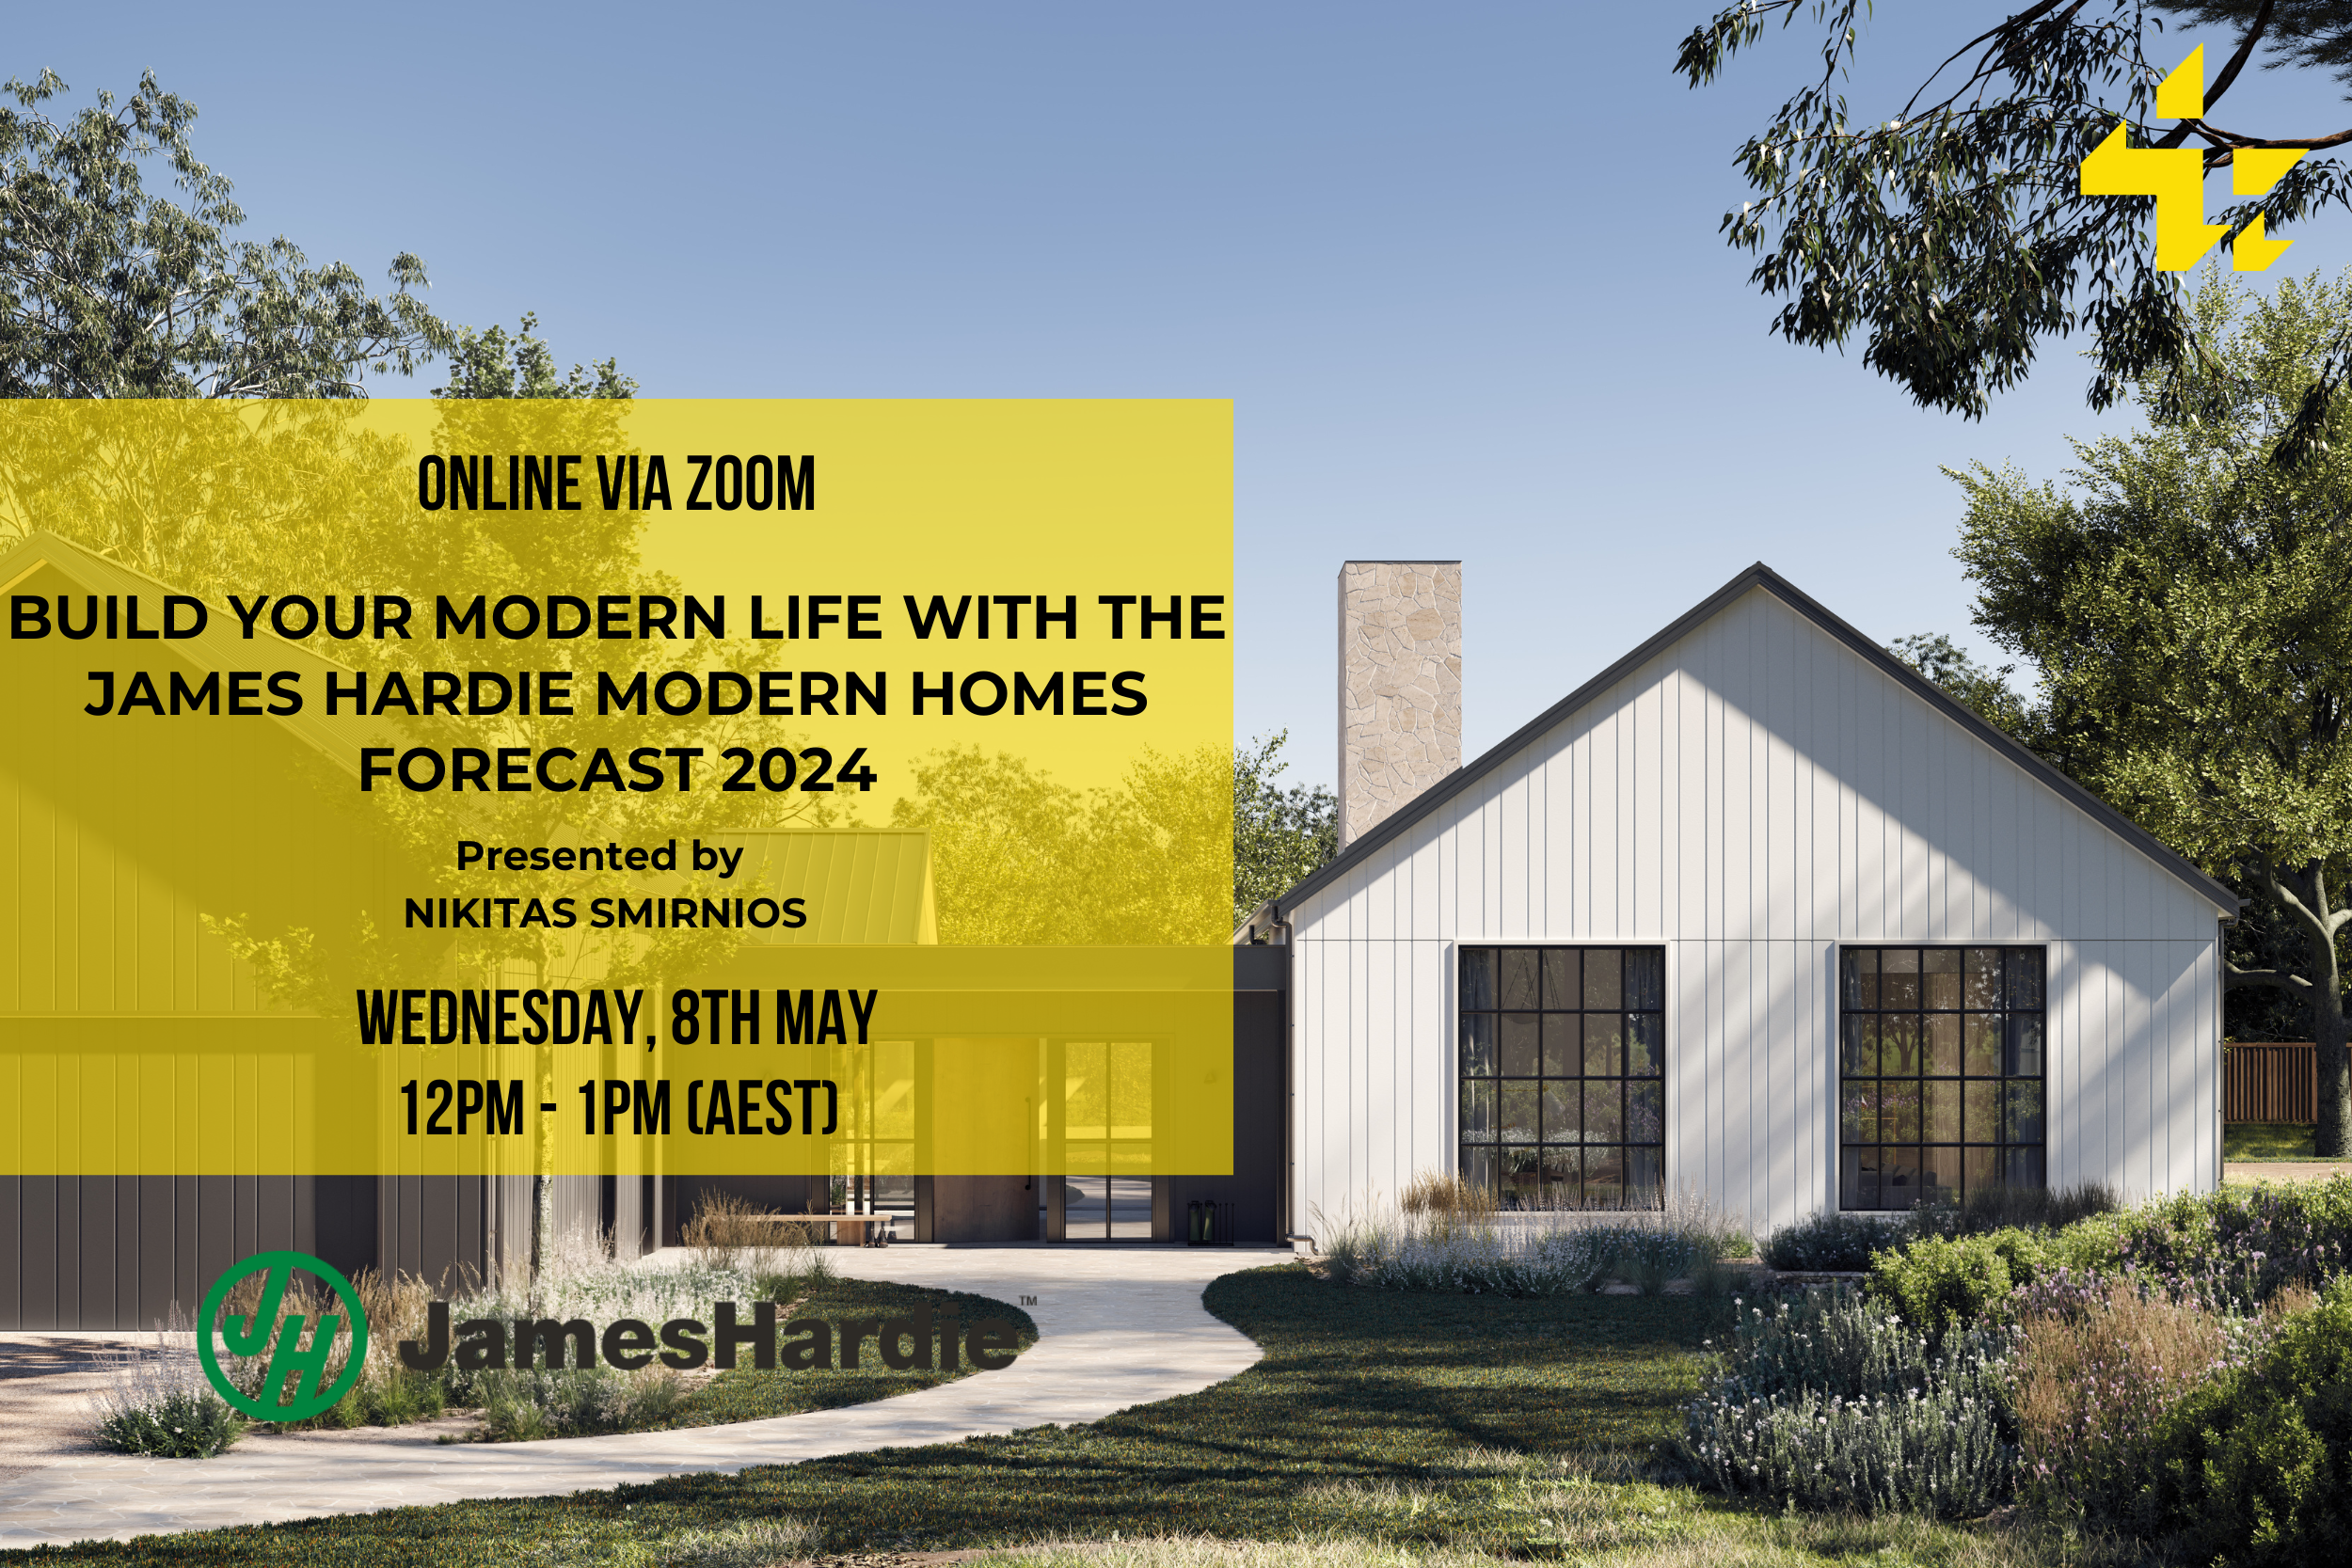 James Hardie Modern Homes Forecast 2024